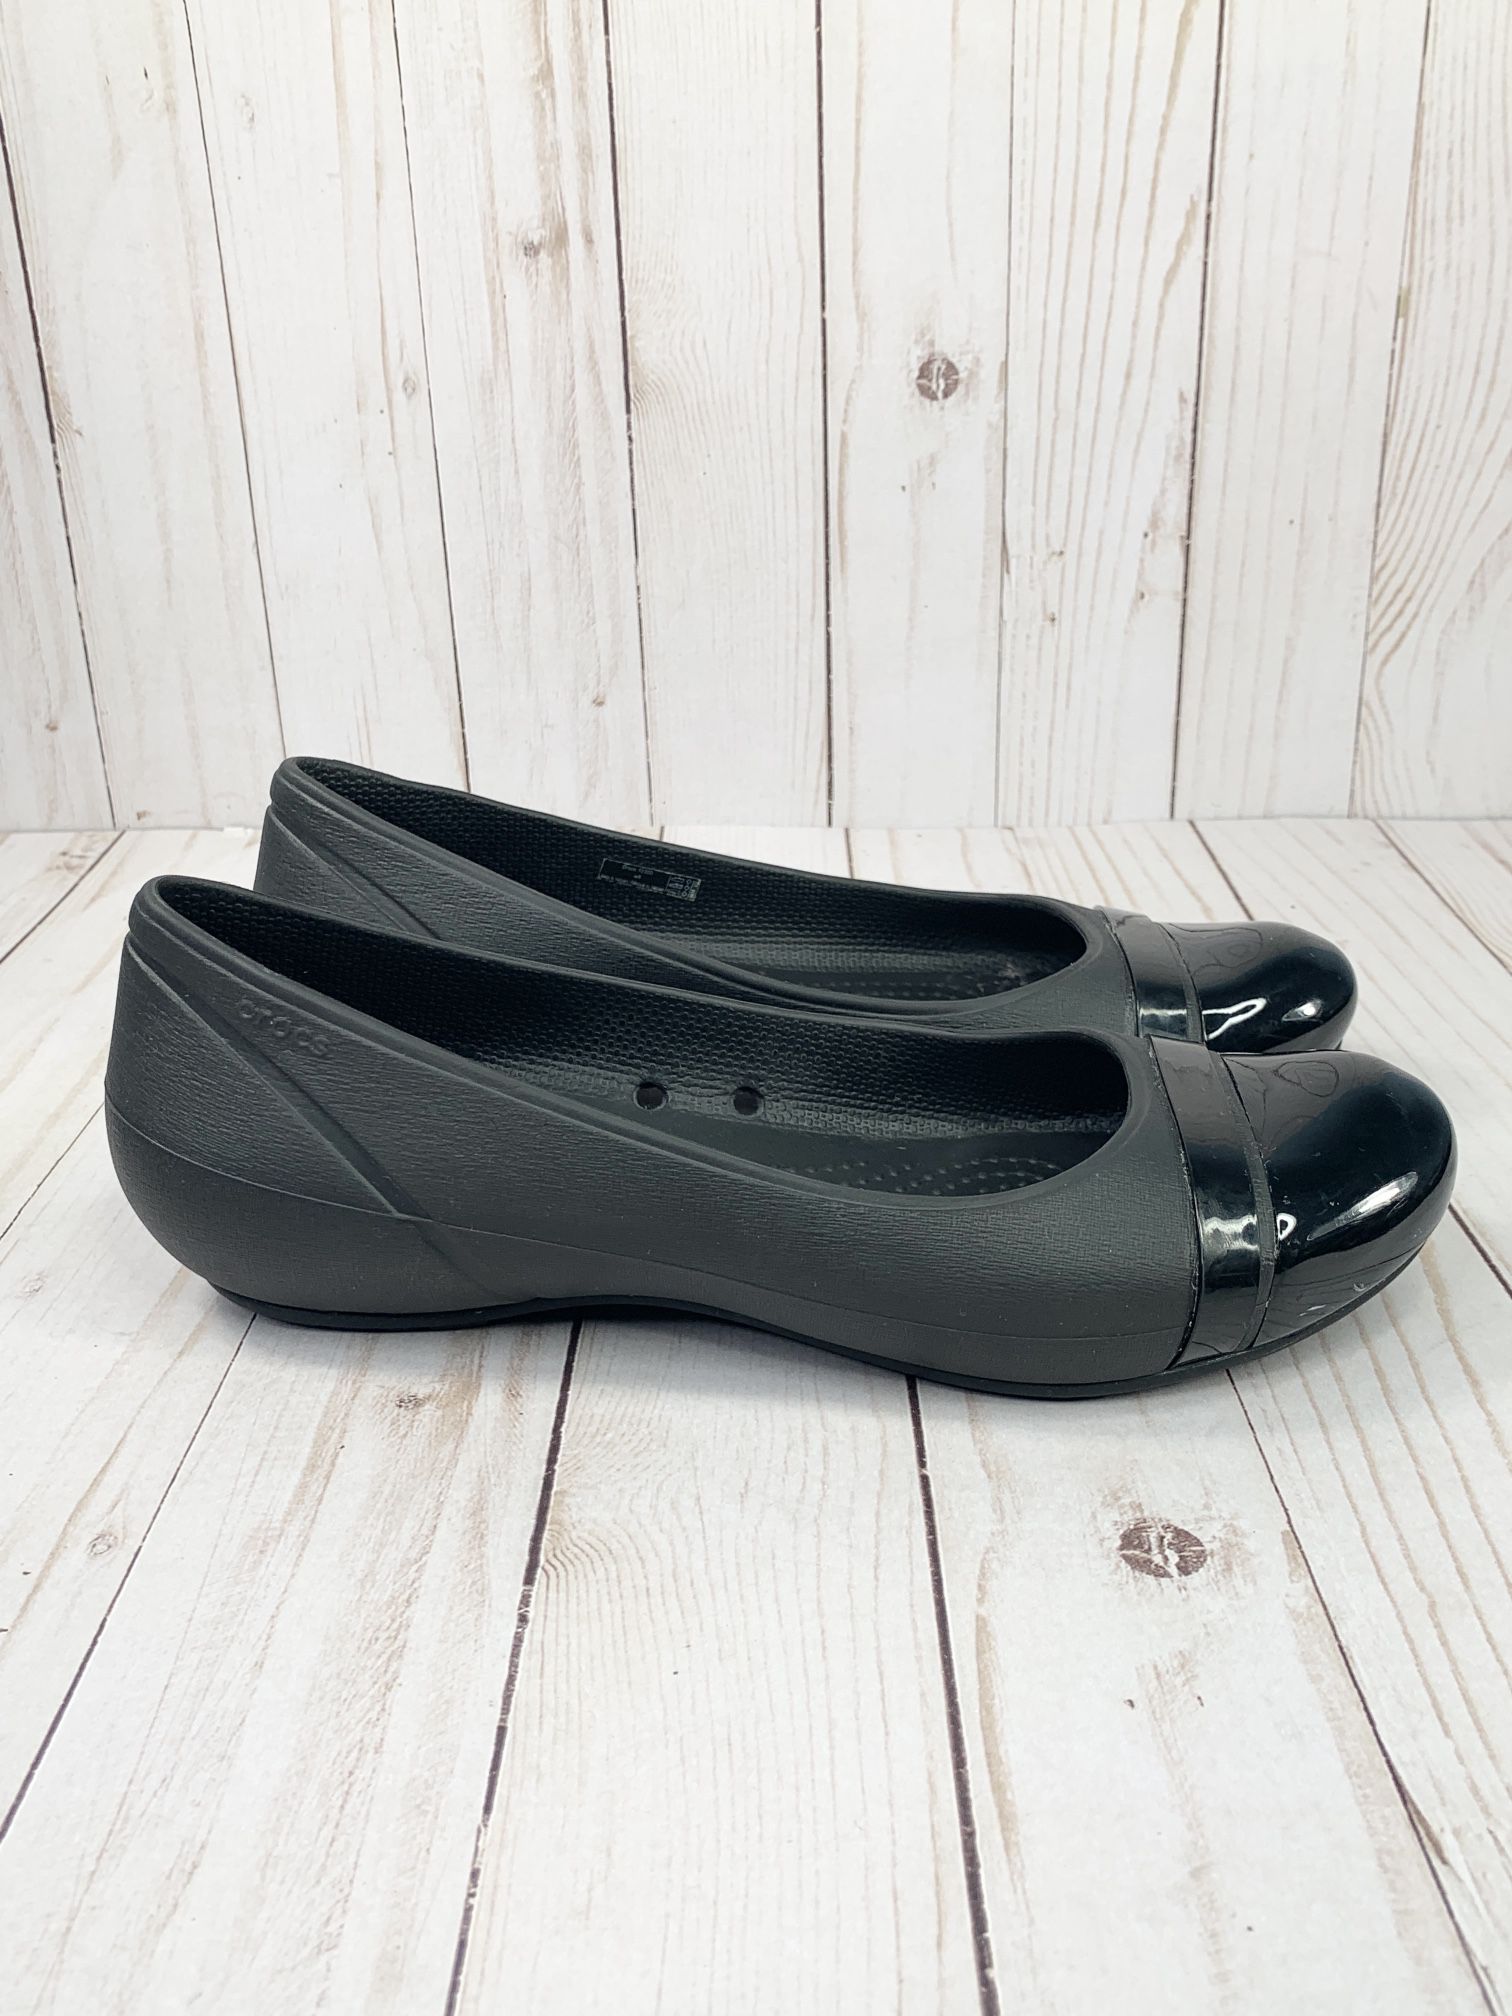 Crocs Women's Cap Toe Black Flats Size 8